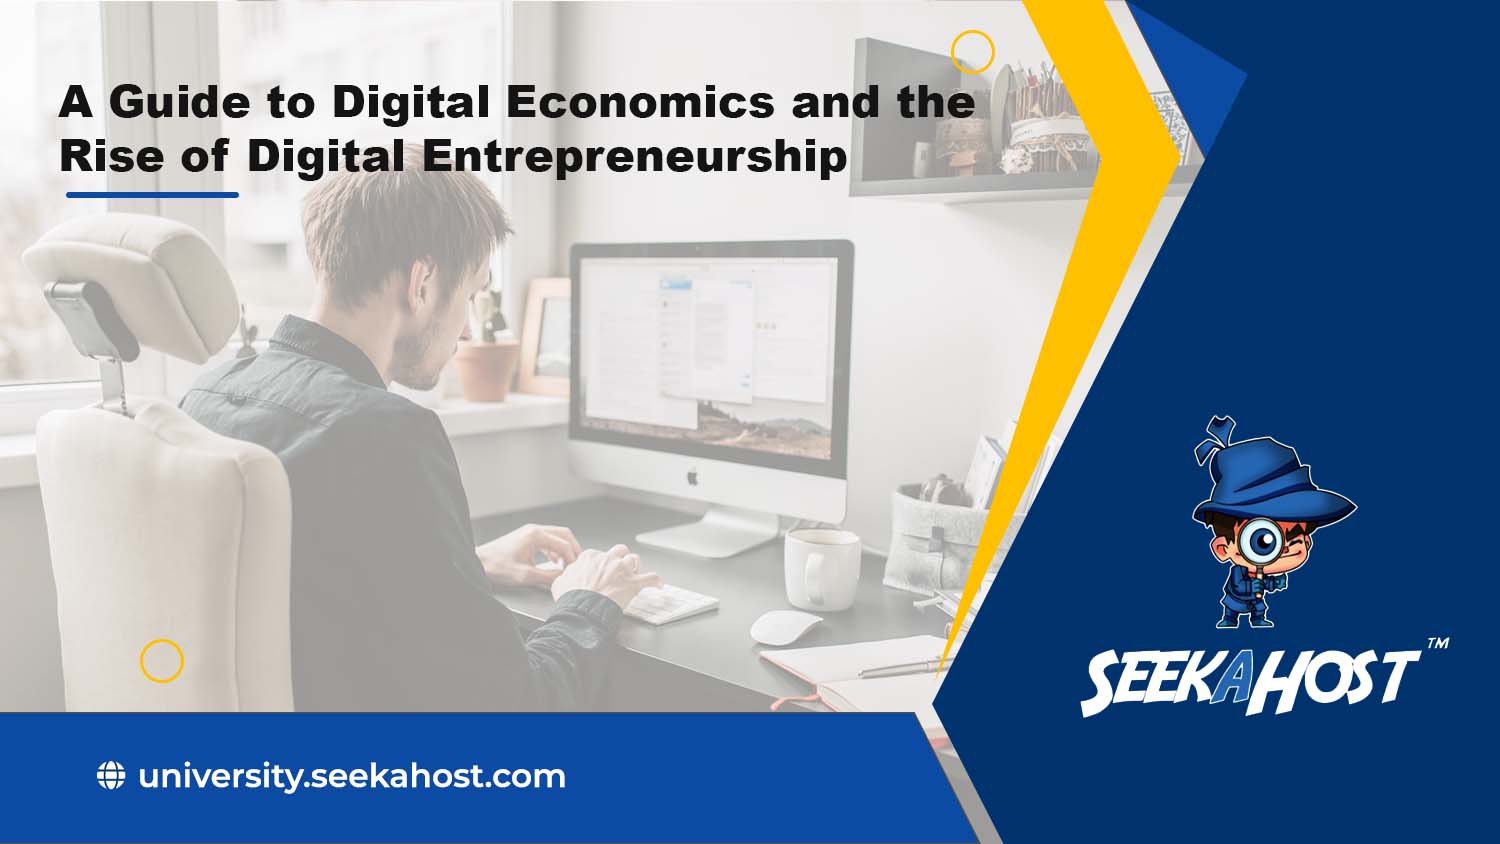 digital-economics-guide-and-digital-entrepreneurship-rise